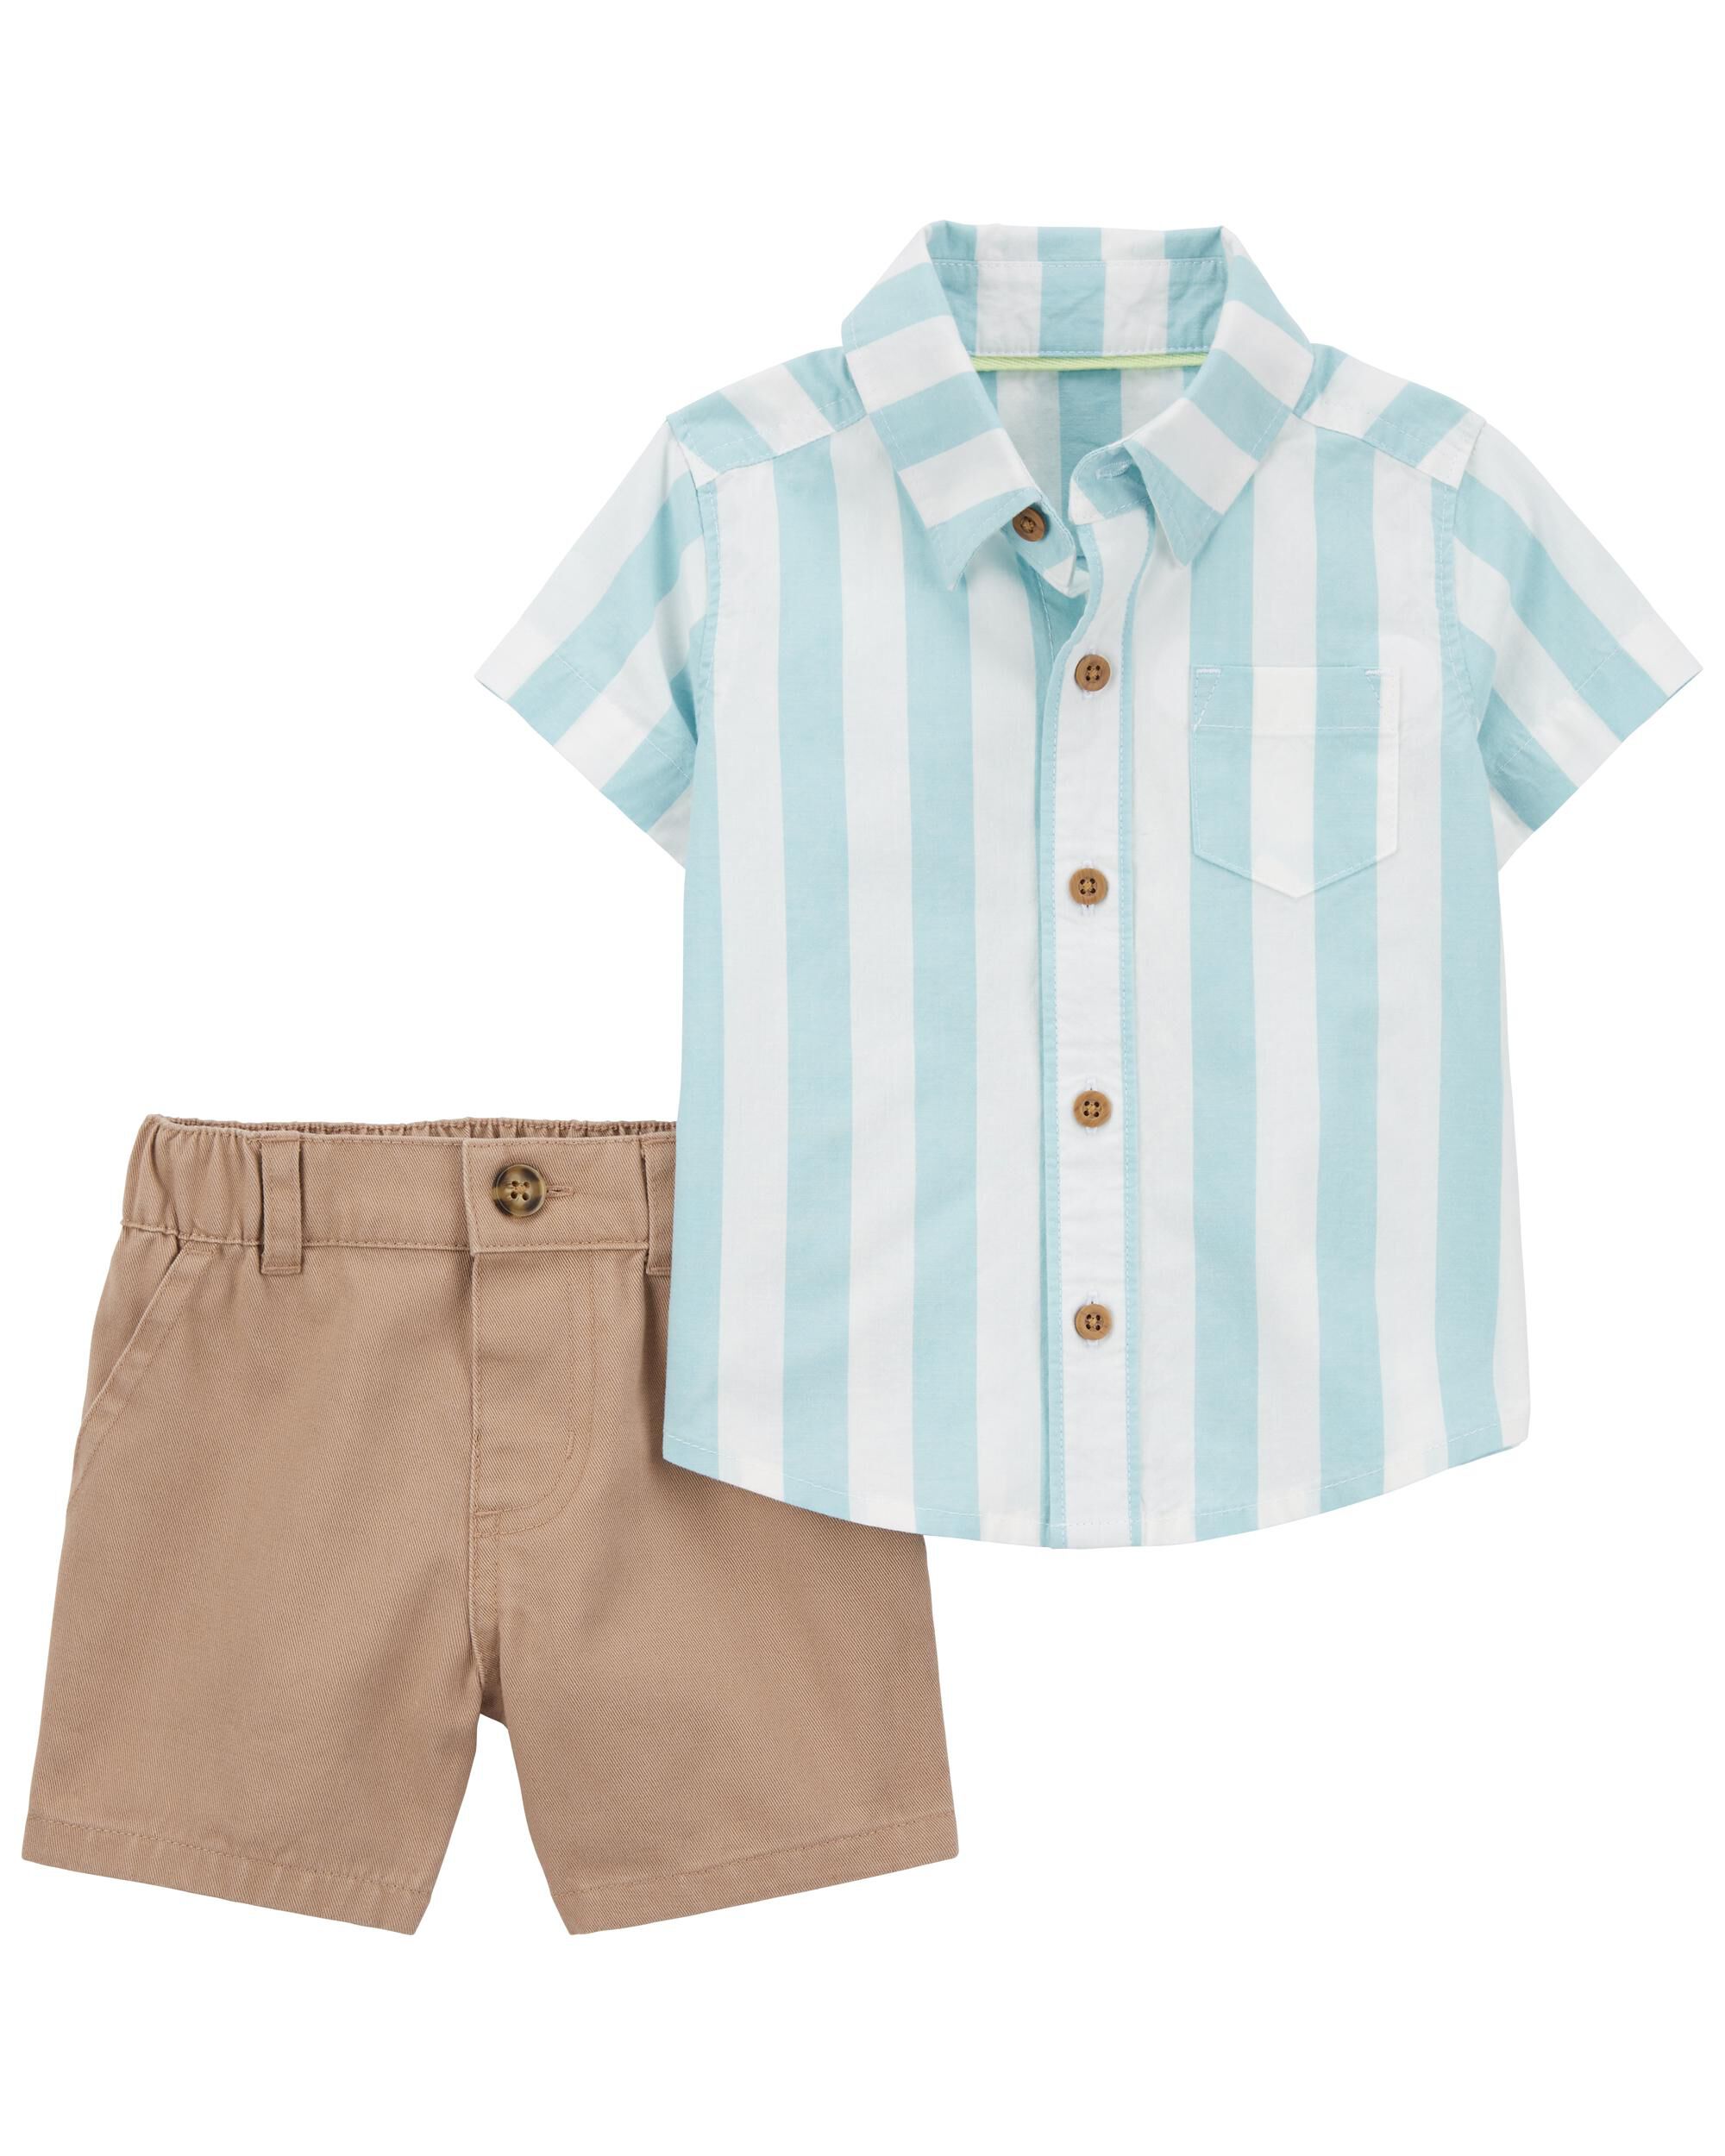 Комплект из двух предметов: рубашка на пуговицах и шорты чинос для малышей Carter's